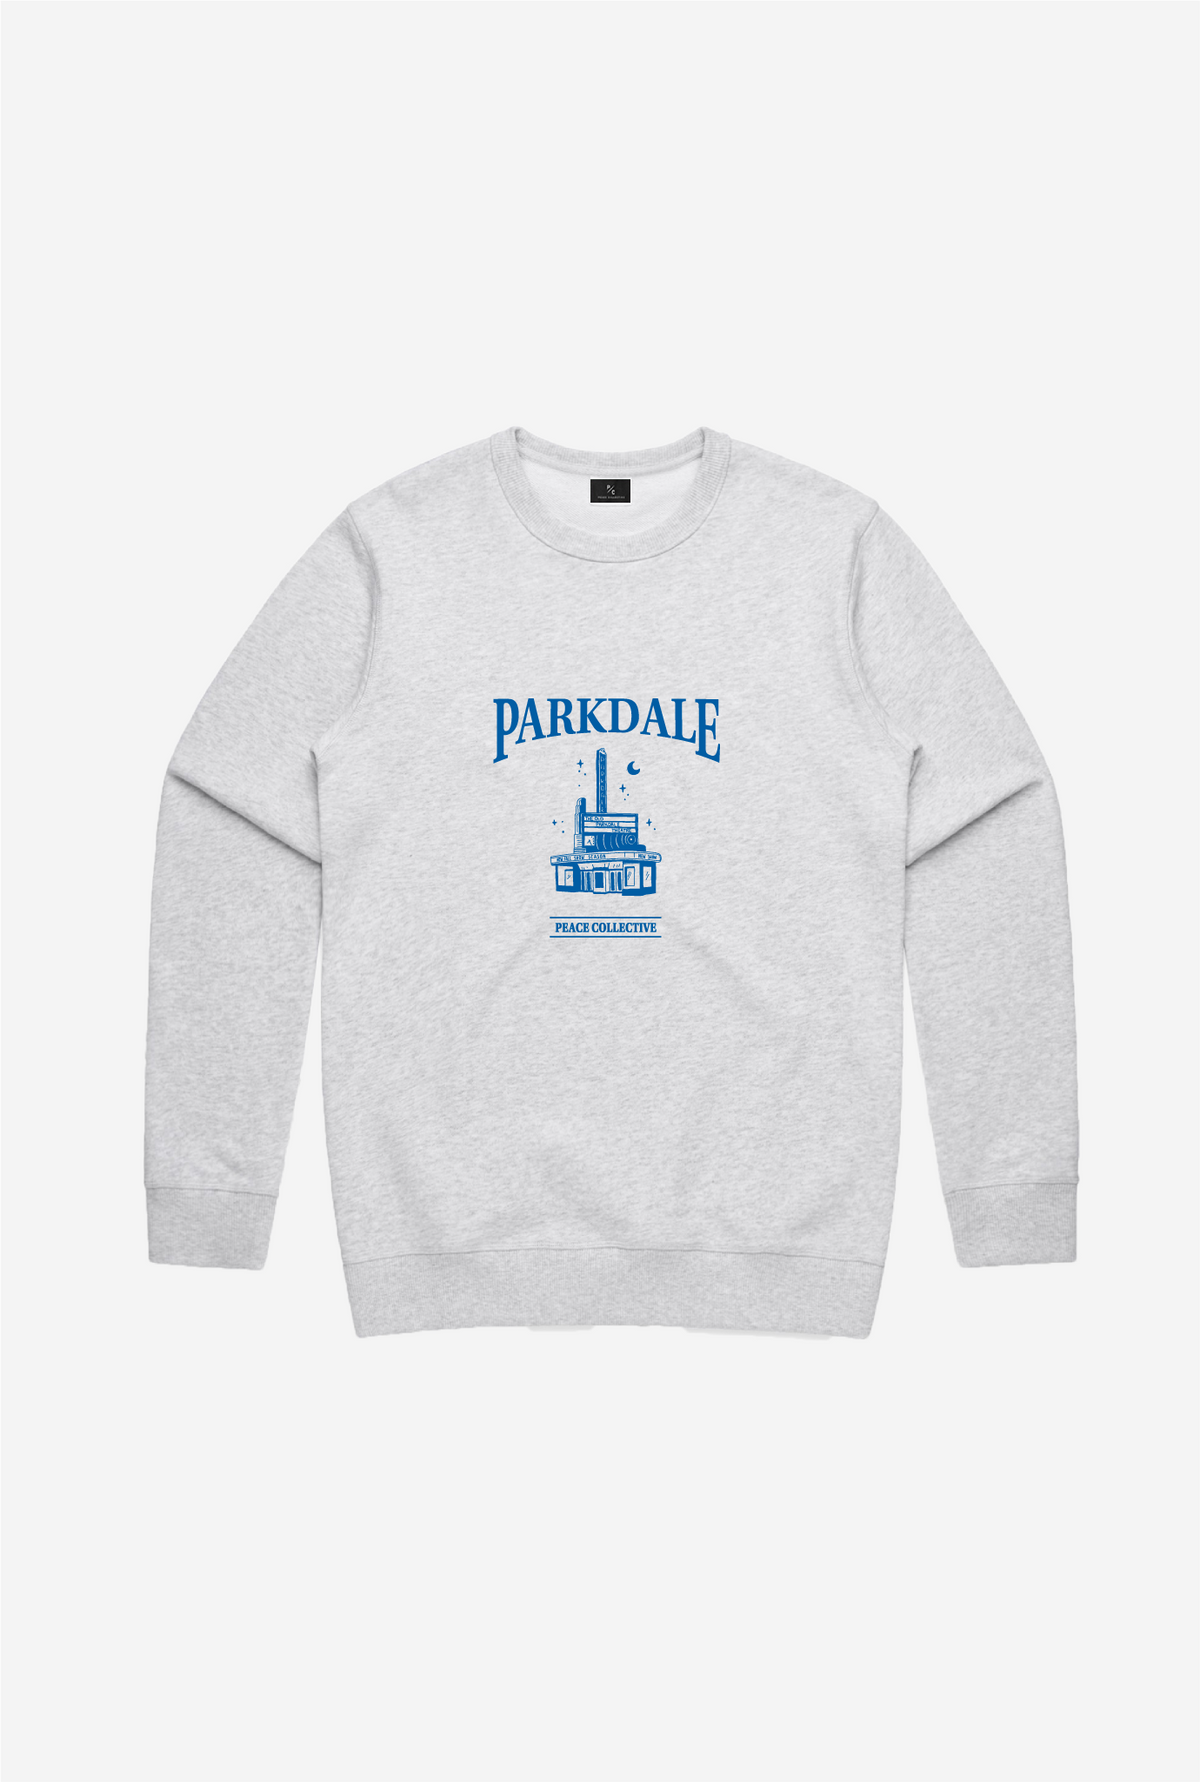 Parkdale Vintage Crewneck - Ash